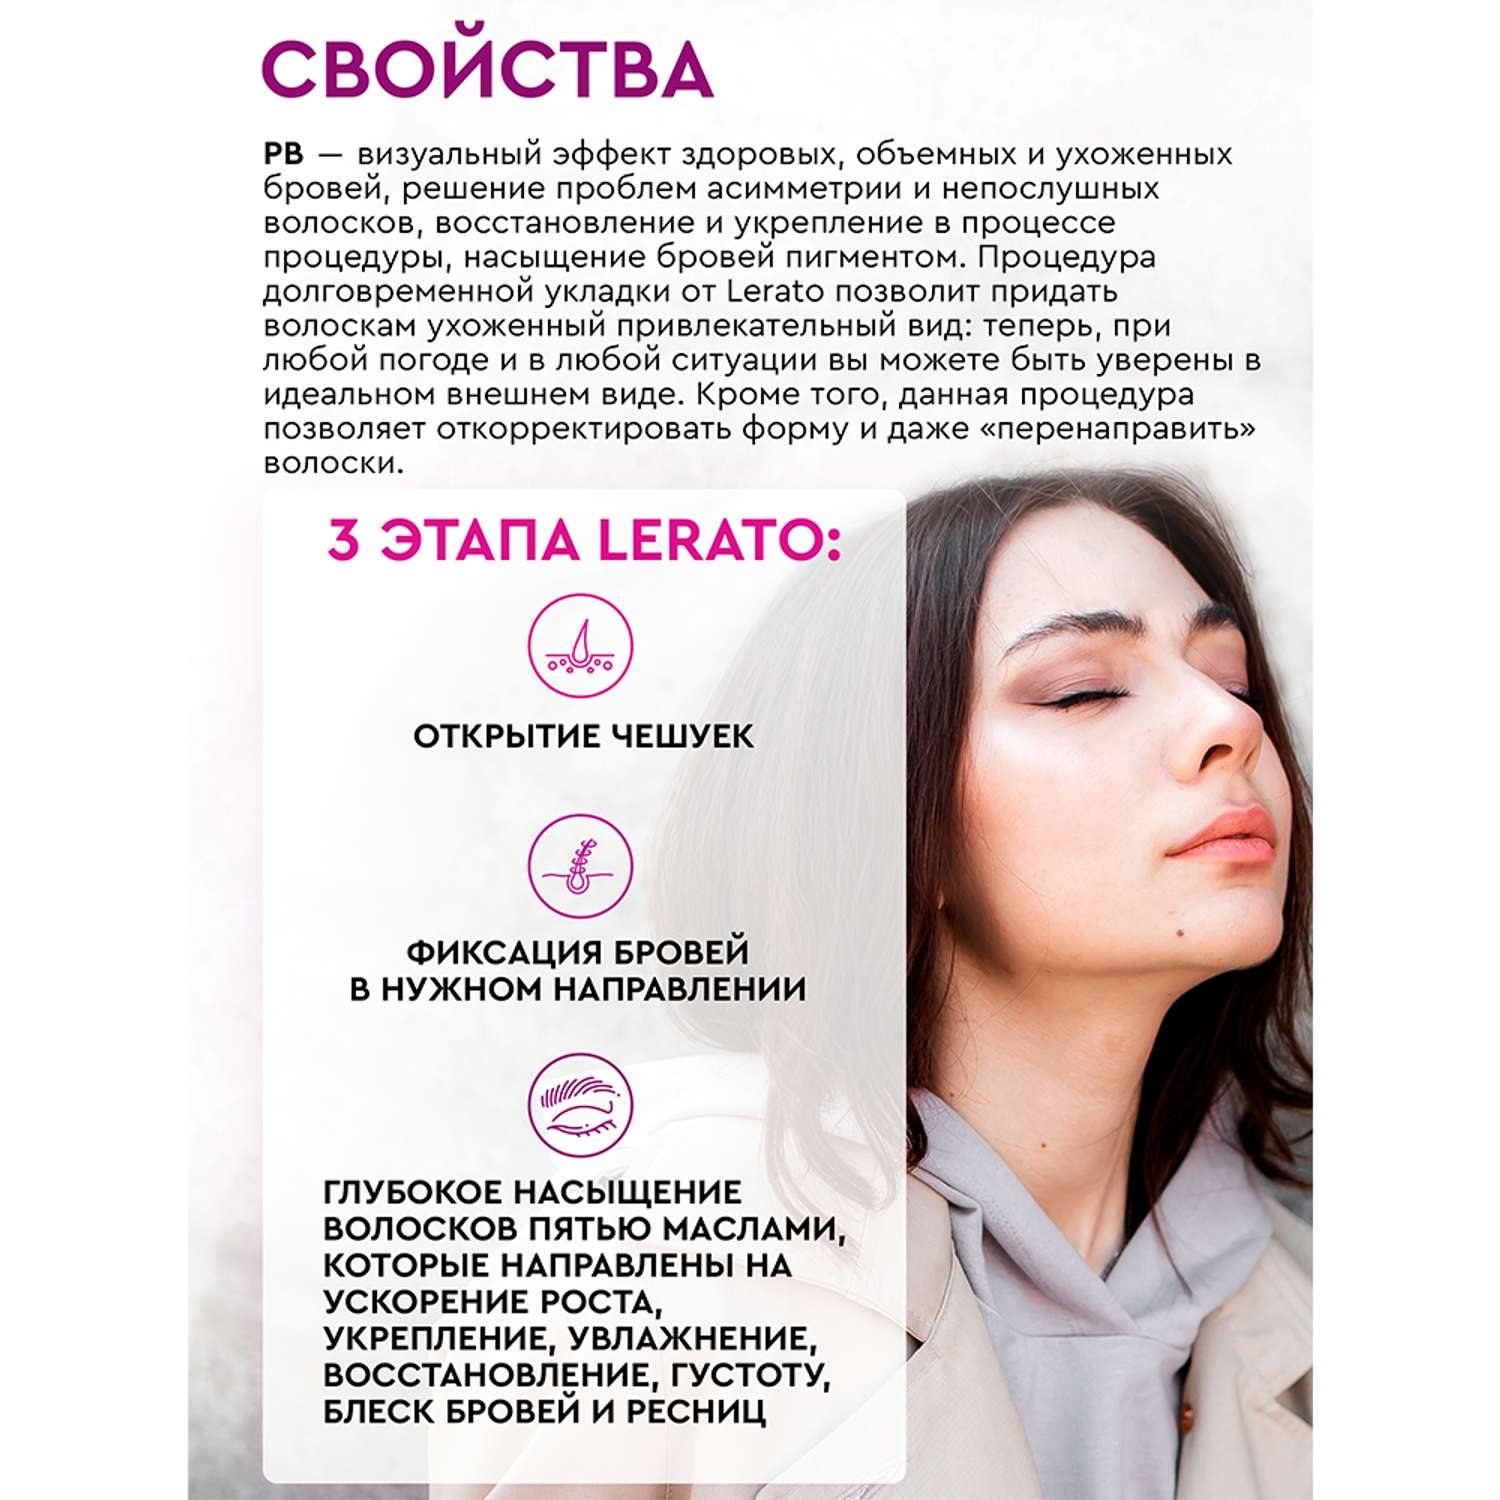 Гель для бровей Lerato Cosmetic Набор для долговременной укладки бровей и ресниц в 3 шага Lerato Cosmetic - фото 3